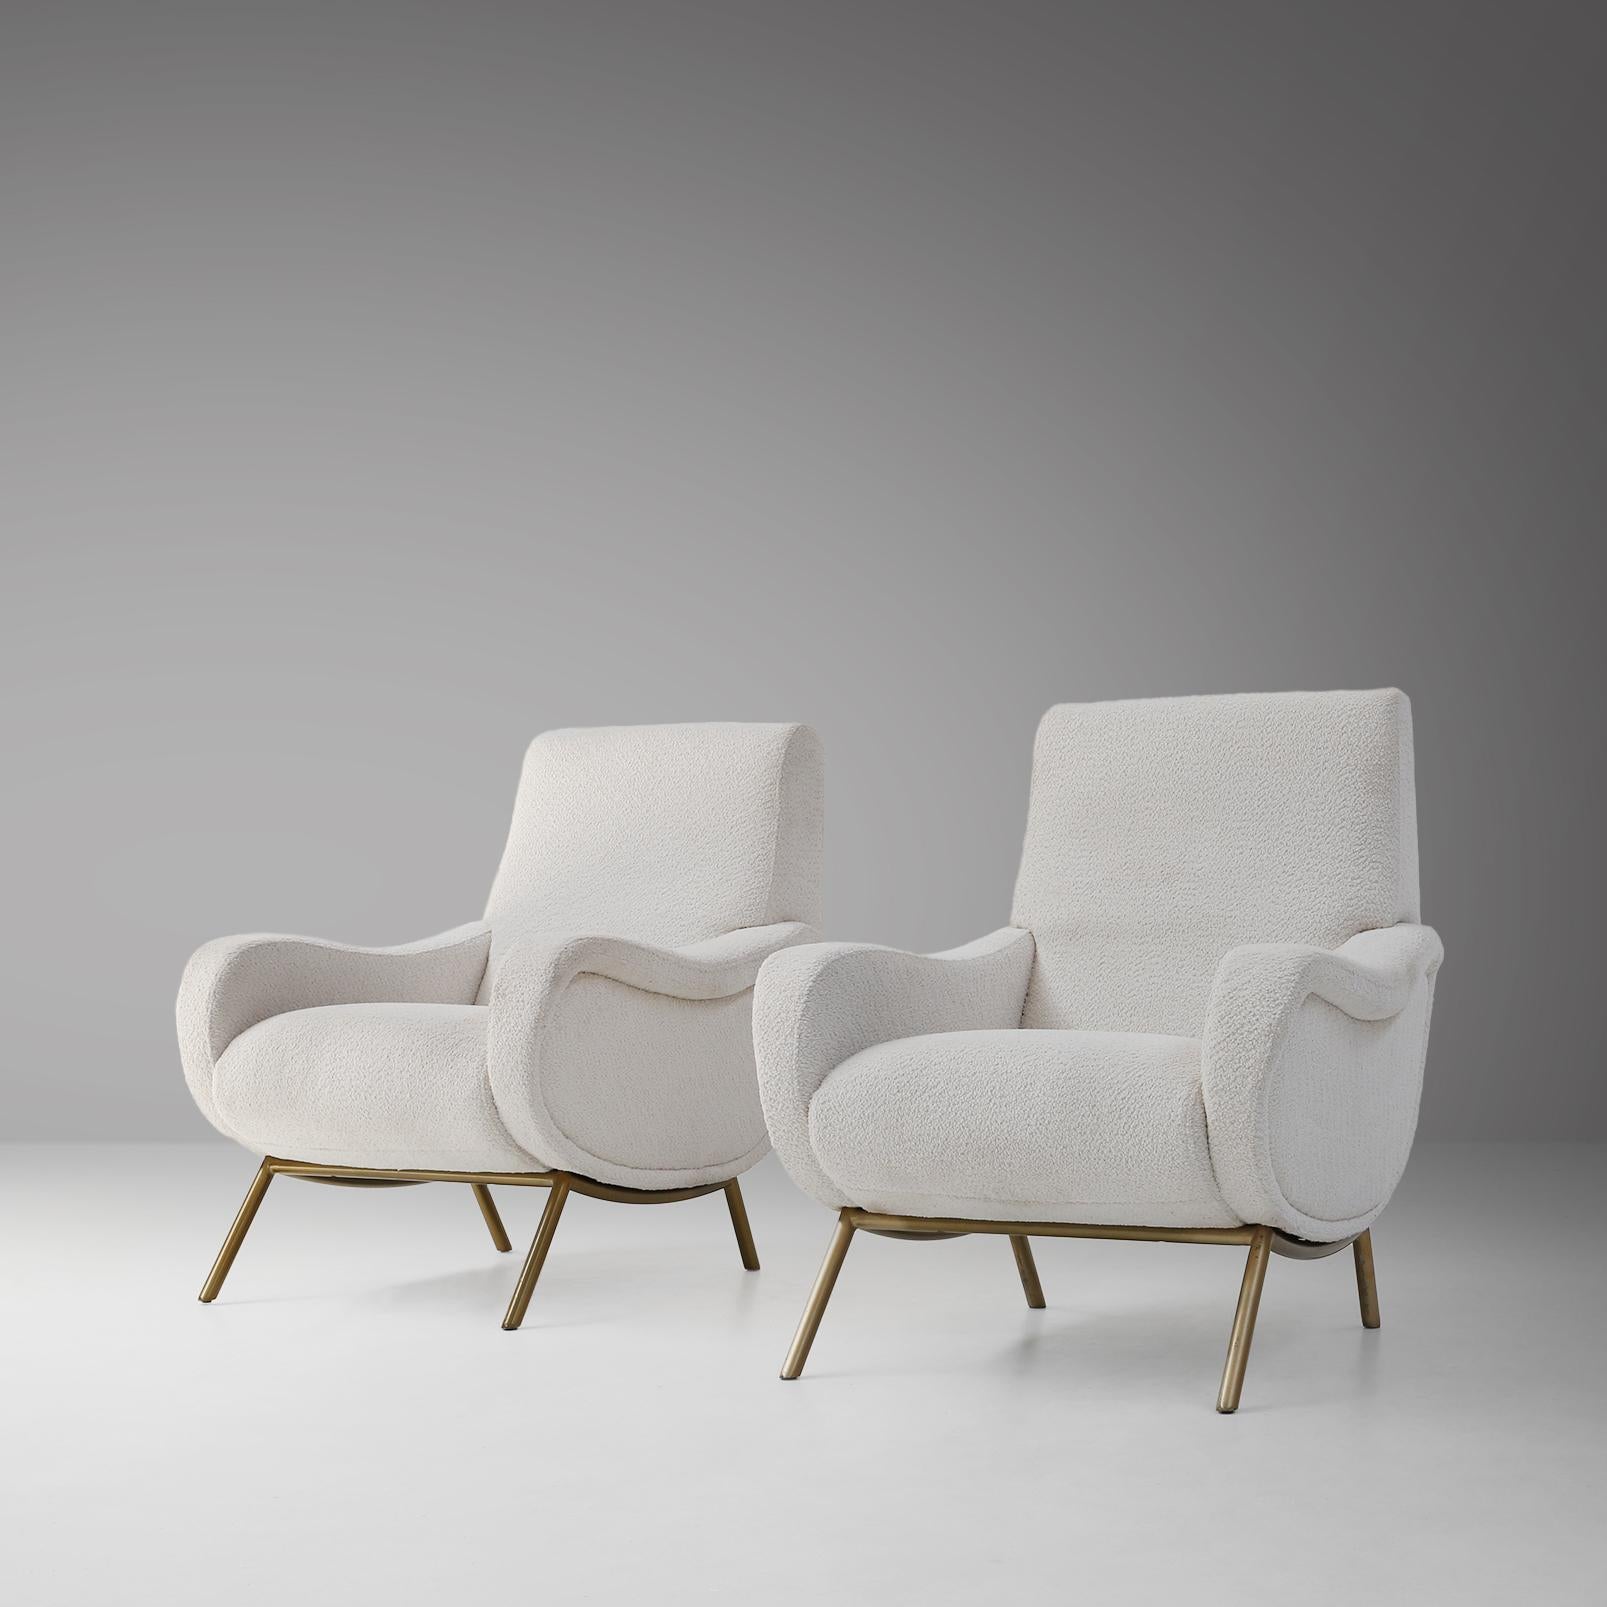 Conçues en 1951 par l'architecte et fabricant de meubles italien Marco Zanuso, ces chaises emblématiques sont un symbole d'innovation stylistique, matérielle et technologique. Ils ont remporté une médaille d'or à la Triennale de Milan l'année de